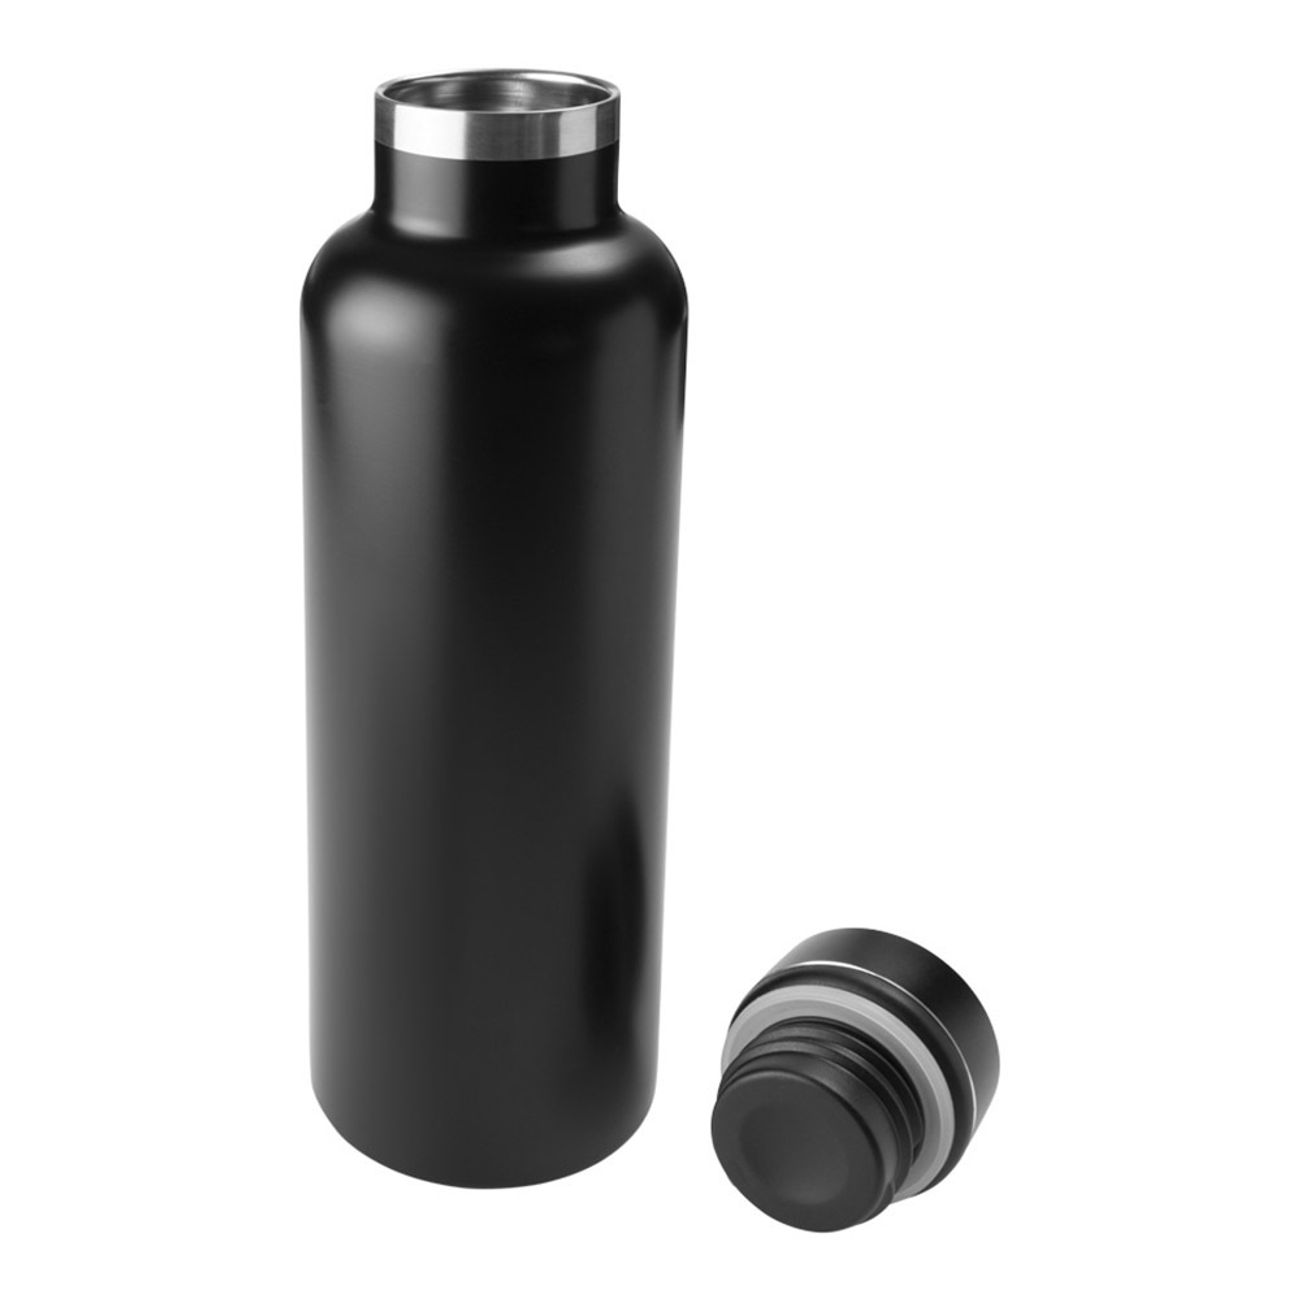 gadgetmonster-smart-flaska-3